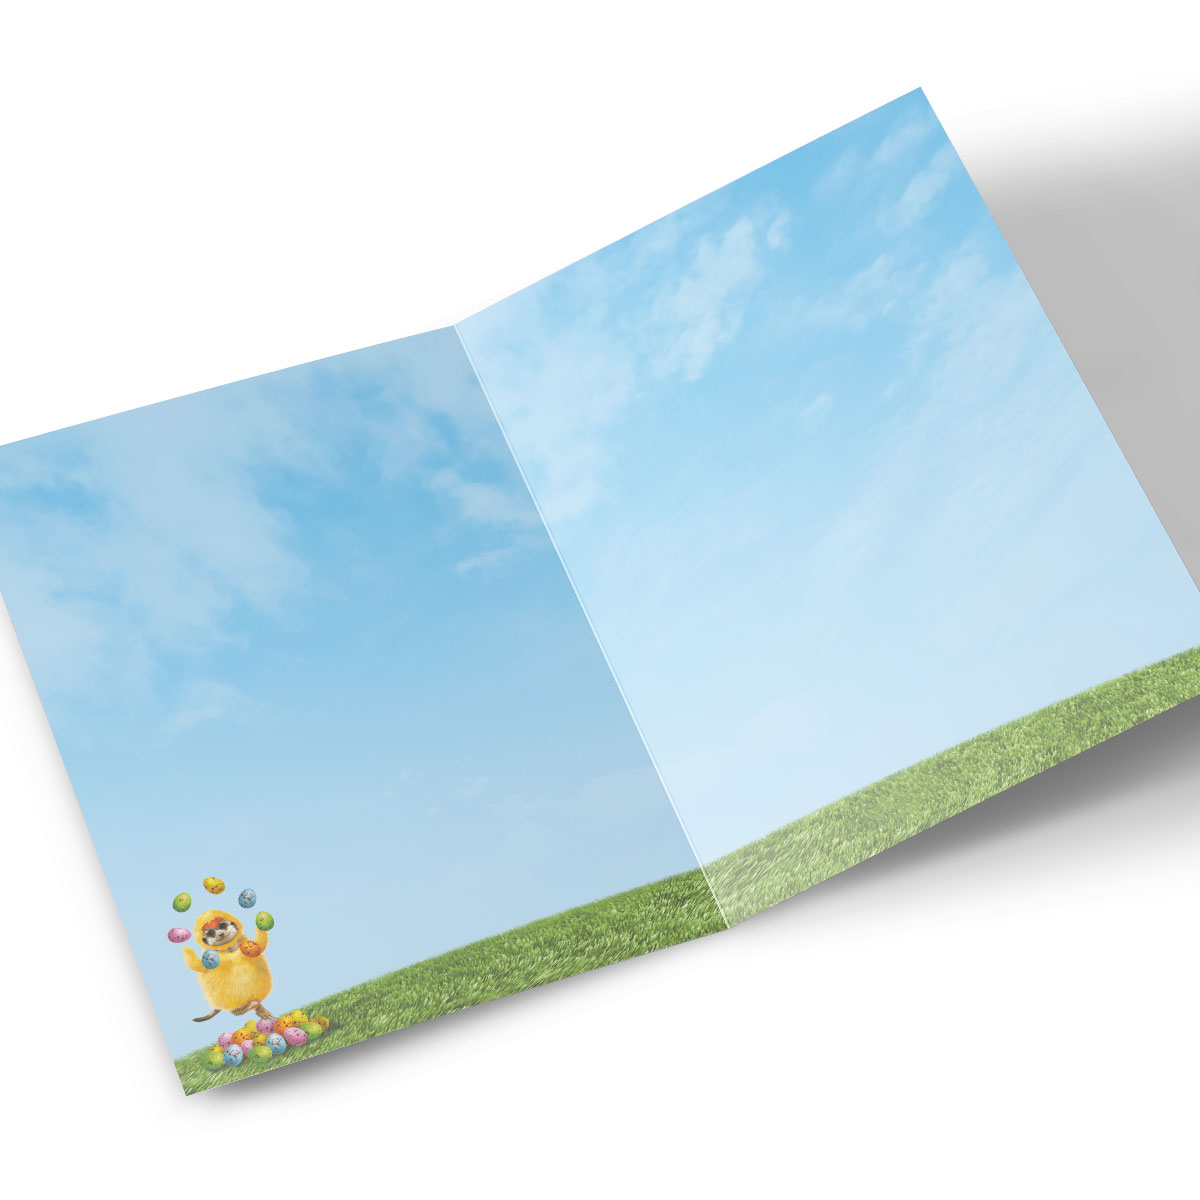 Personalised Easter Card - Juggling Meerkat